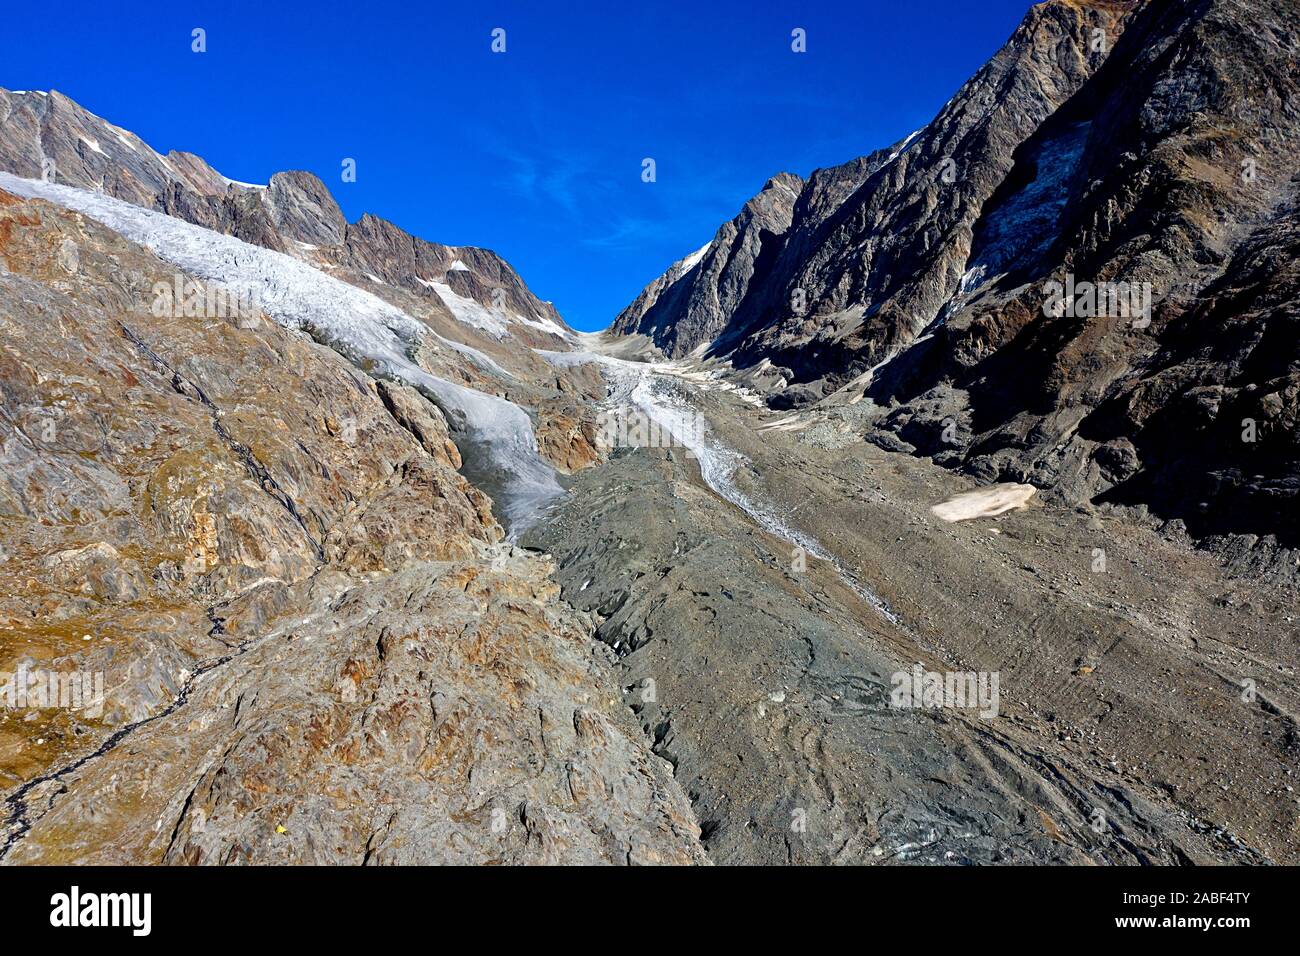 Glacier Langgletscher éboulis-couverts pour atteindre le col de montagne Lötschenlücke, glacier Anungletscher à gauche, Lötschental, Valais, Suisse Banque D'Images